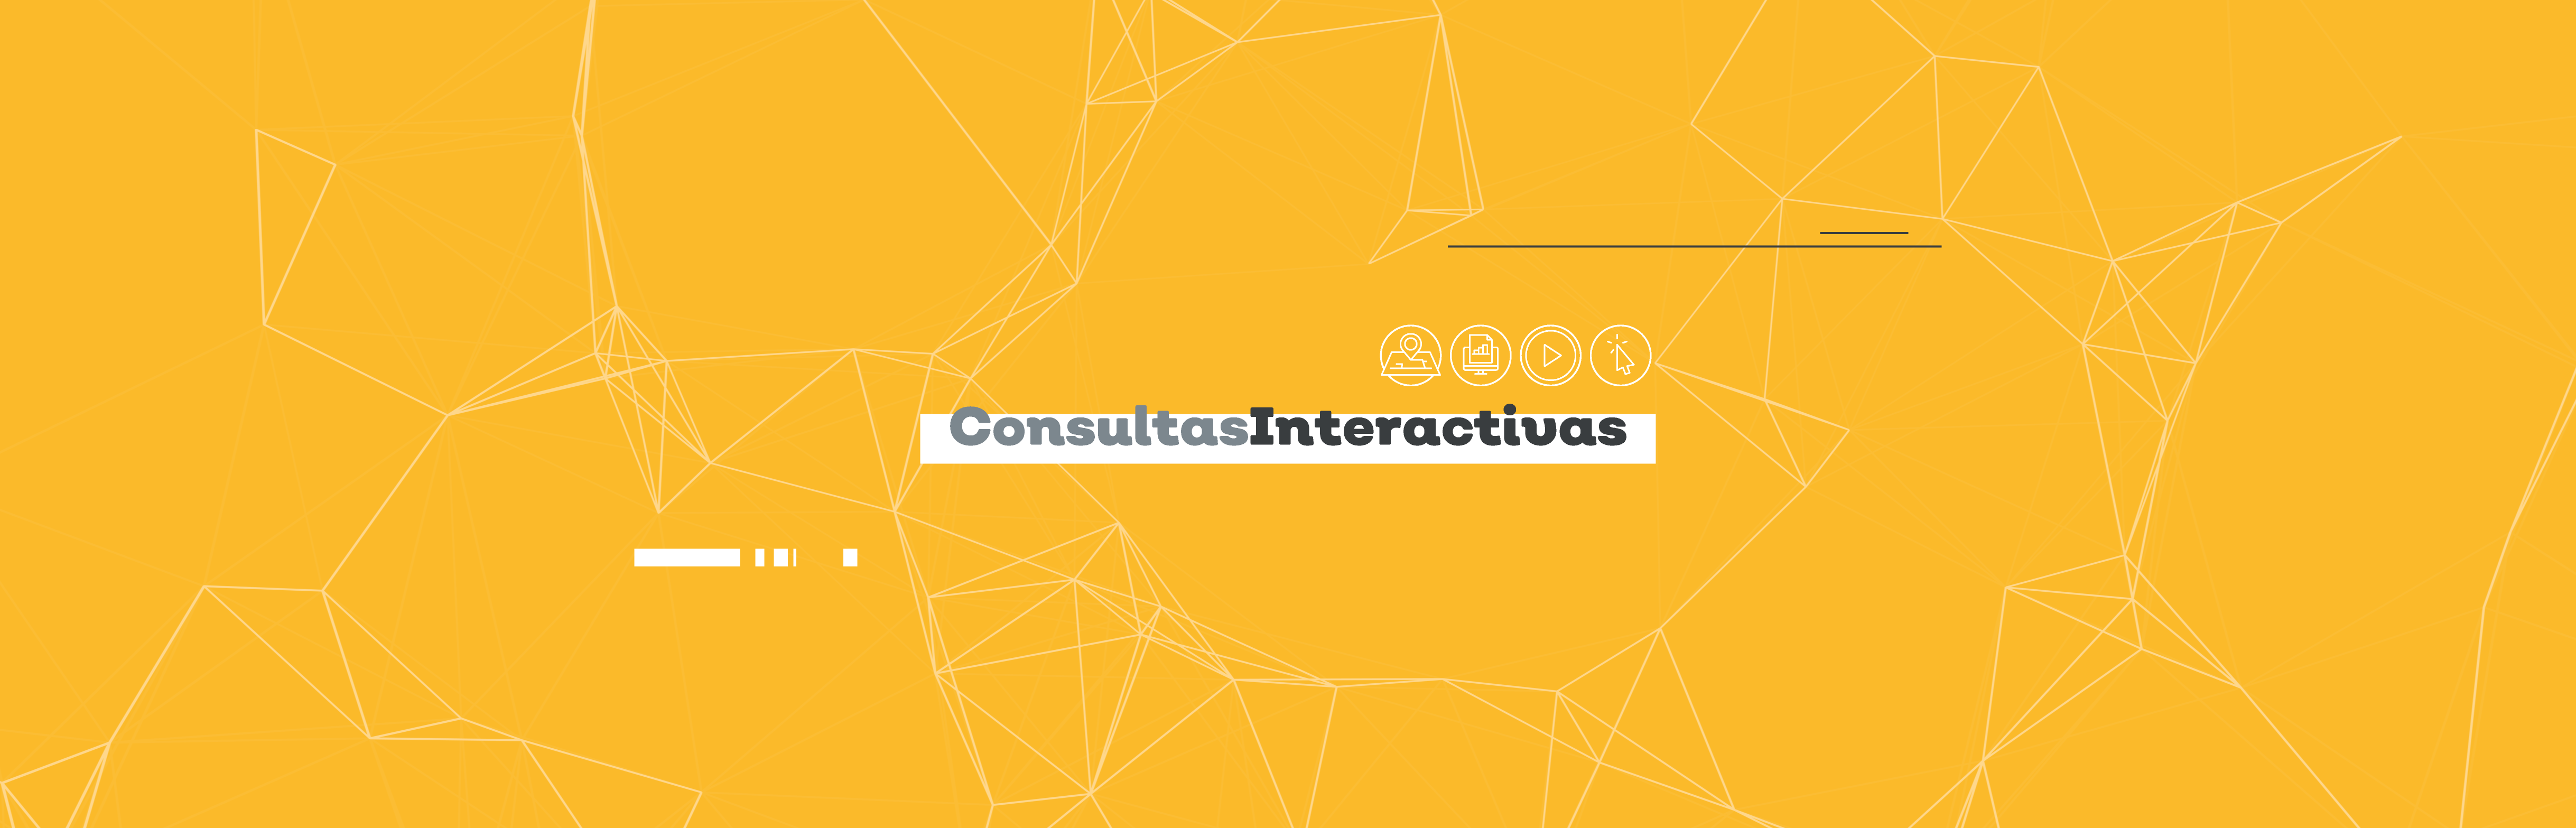 Visita las consultas interactivas